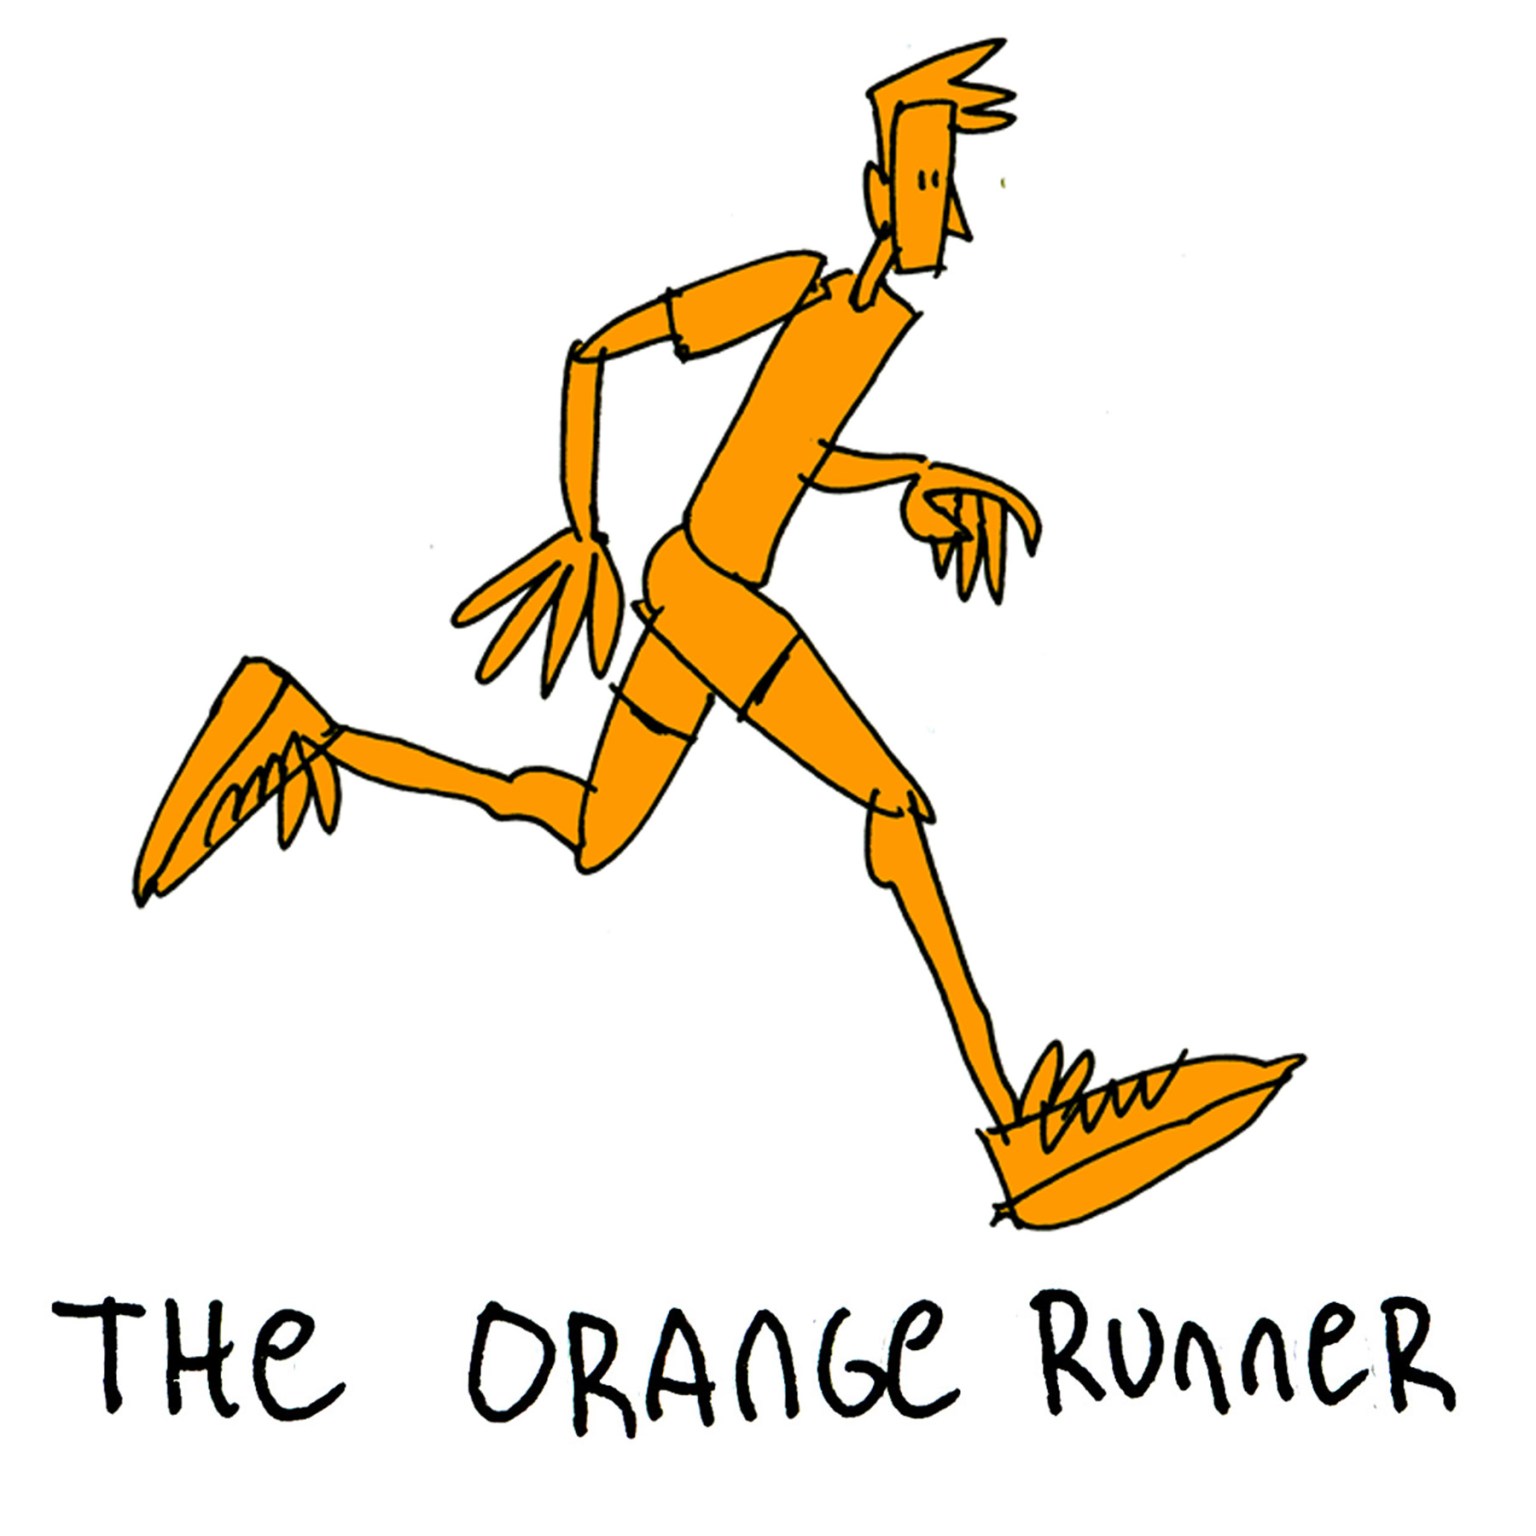 The Orange runner